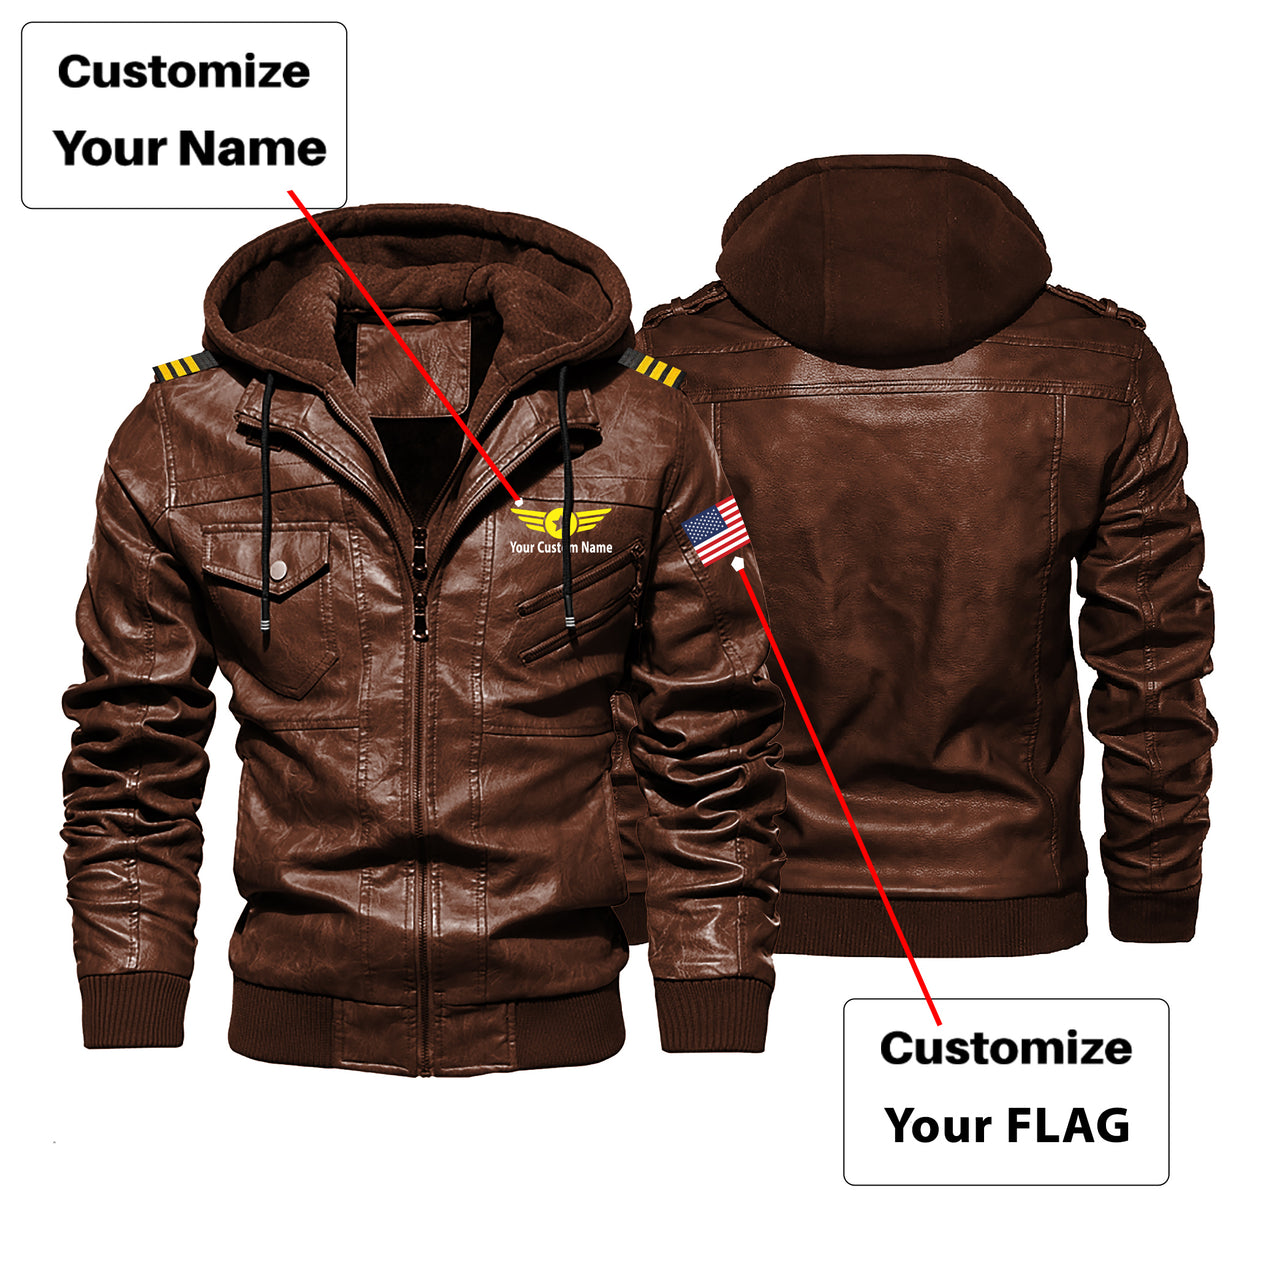 Custom Flag & Name with EPAULETTES "Badge 4" Designed Hooded Leather Jackets